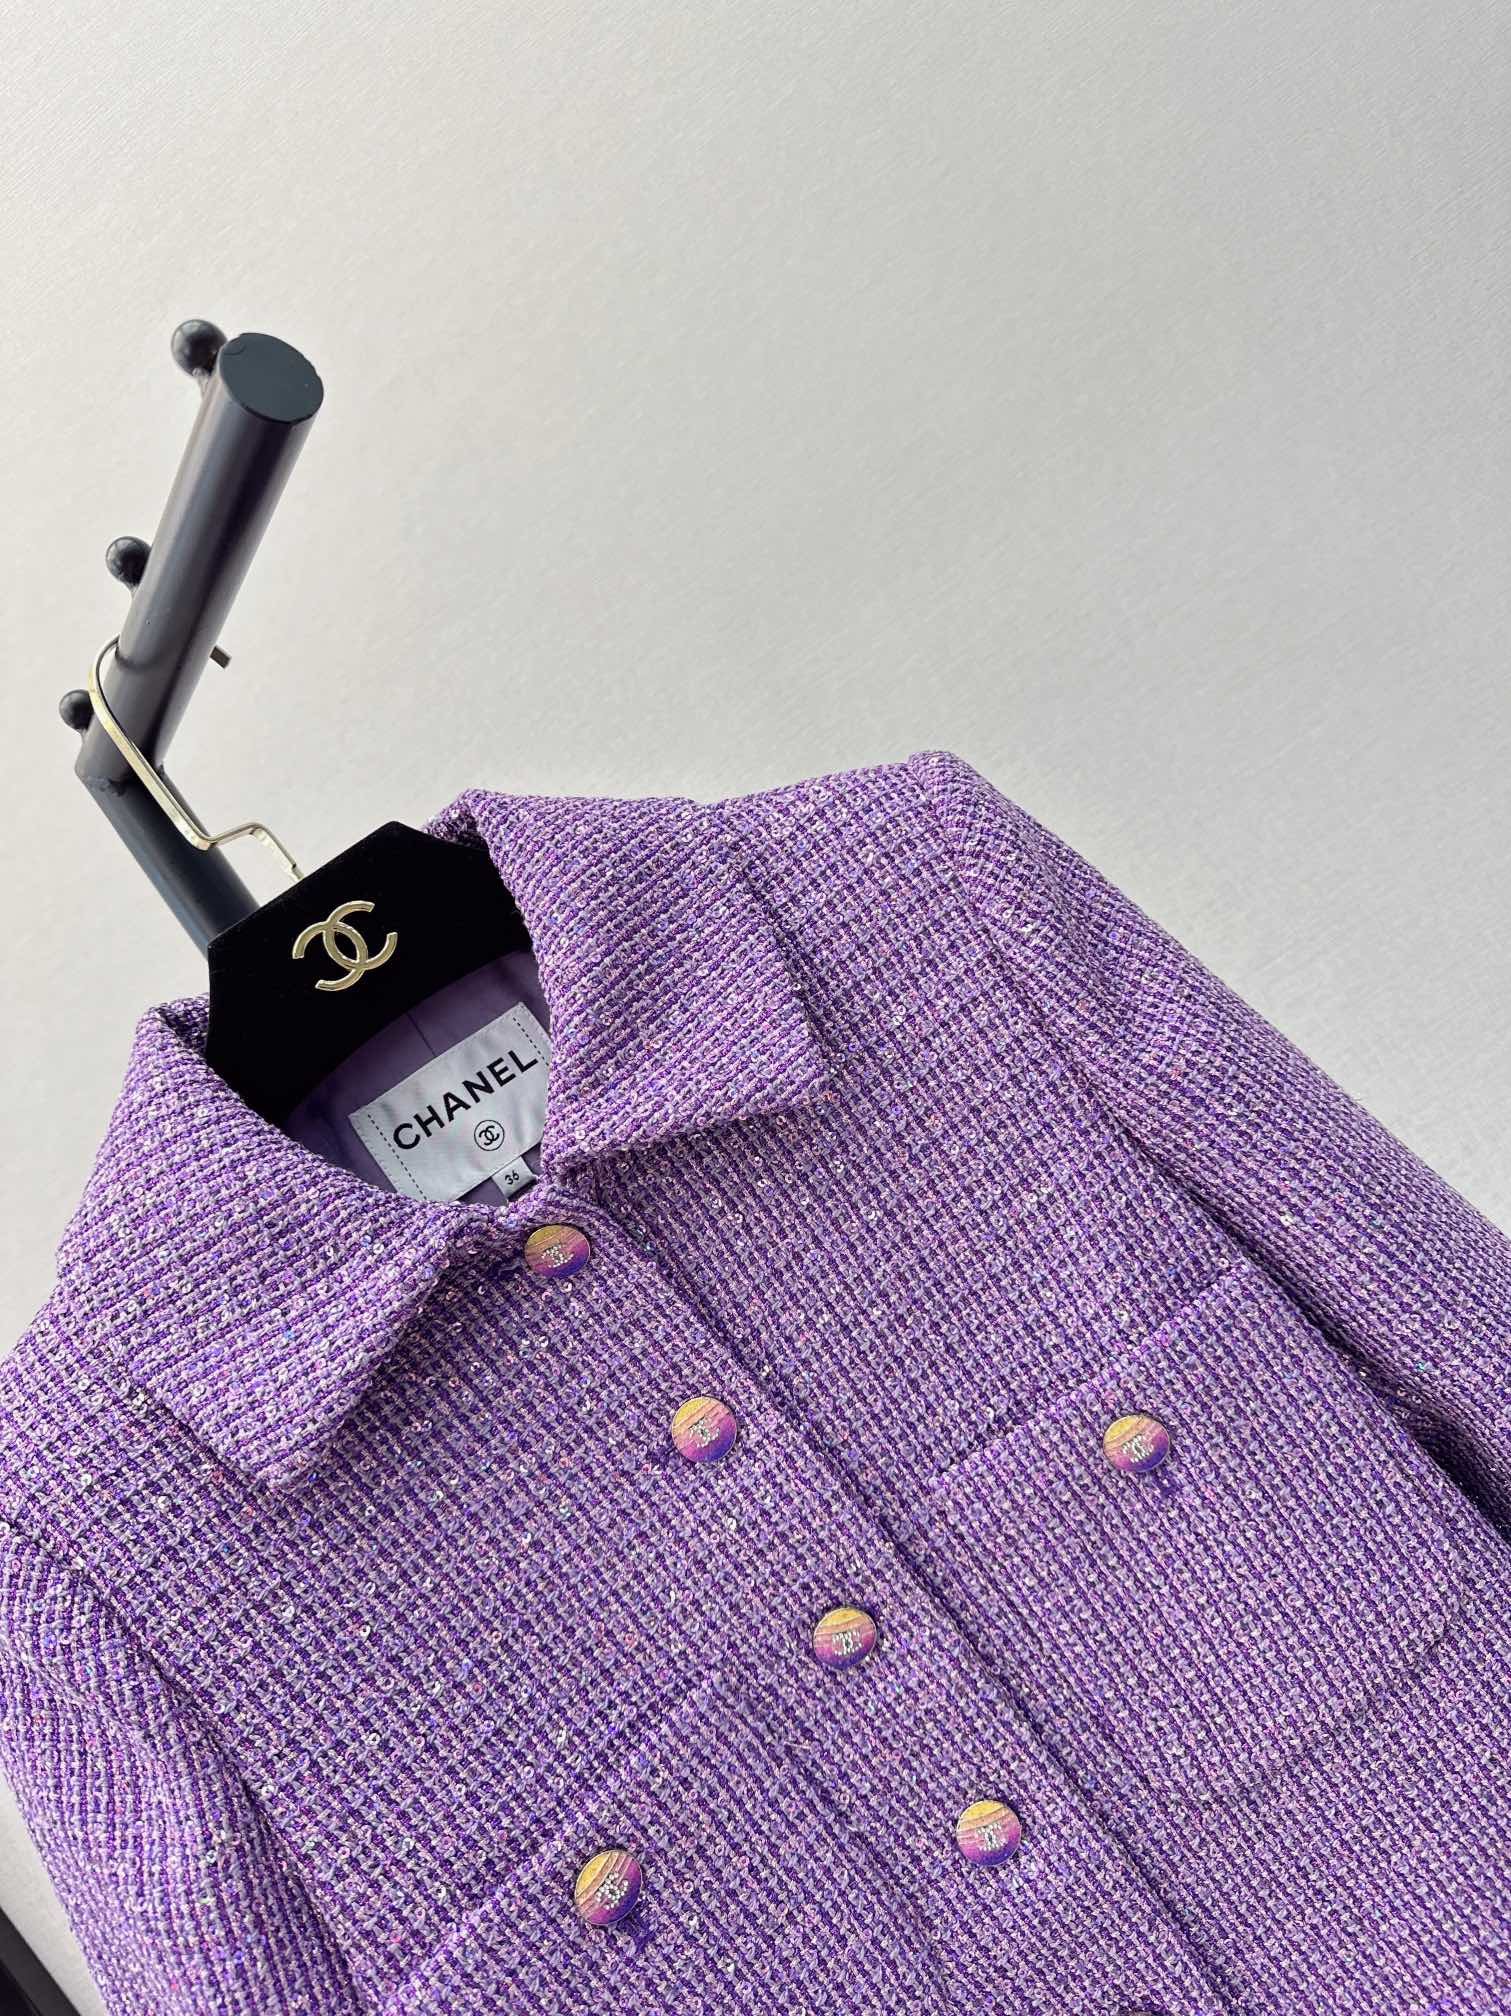 独家首发C家24Ss早春最新款超美紫色系亮片外套3D立体剪裁版型上身巨显瘦简洁不繁重的廓形任何身材都好穿